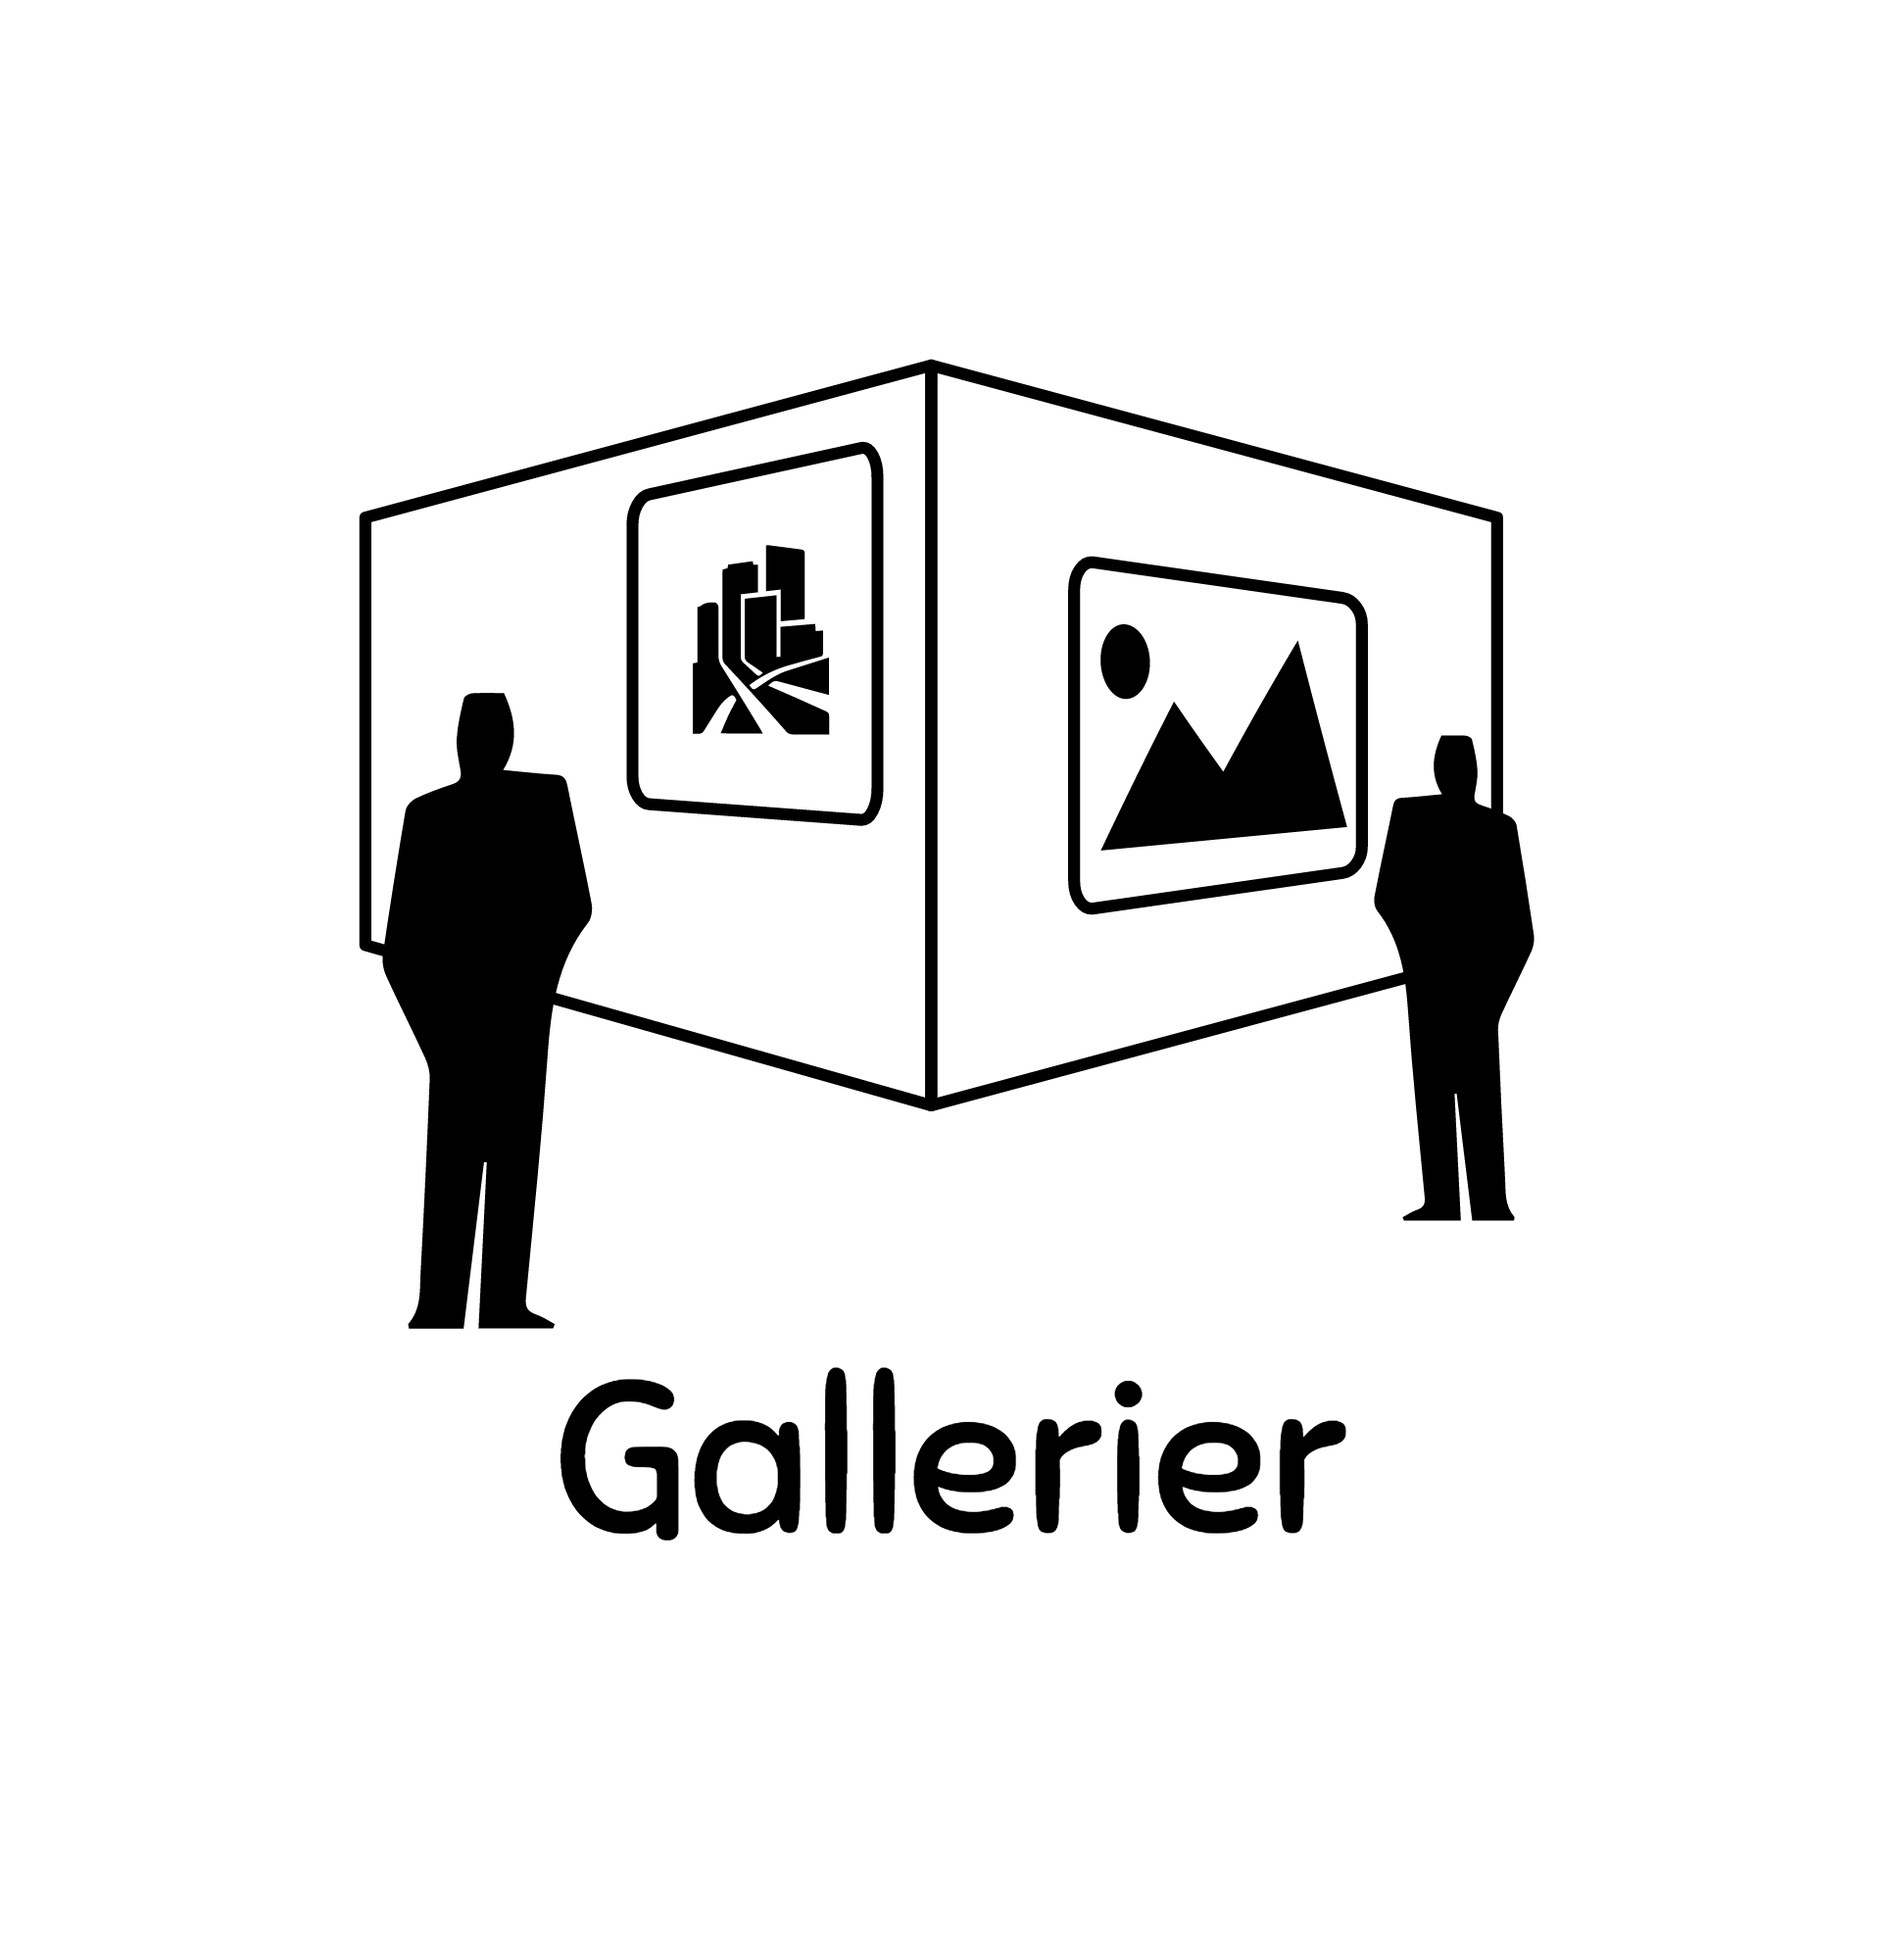 Gallerier-logo-black.png